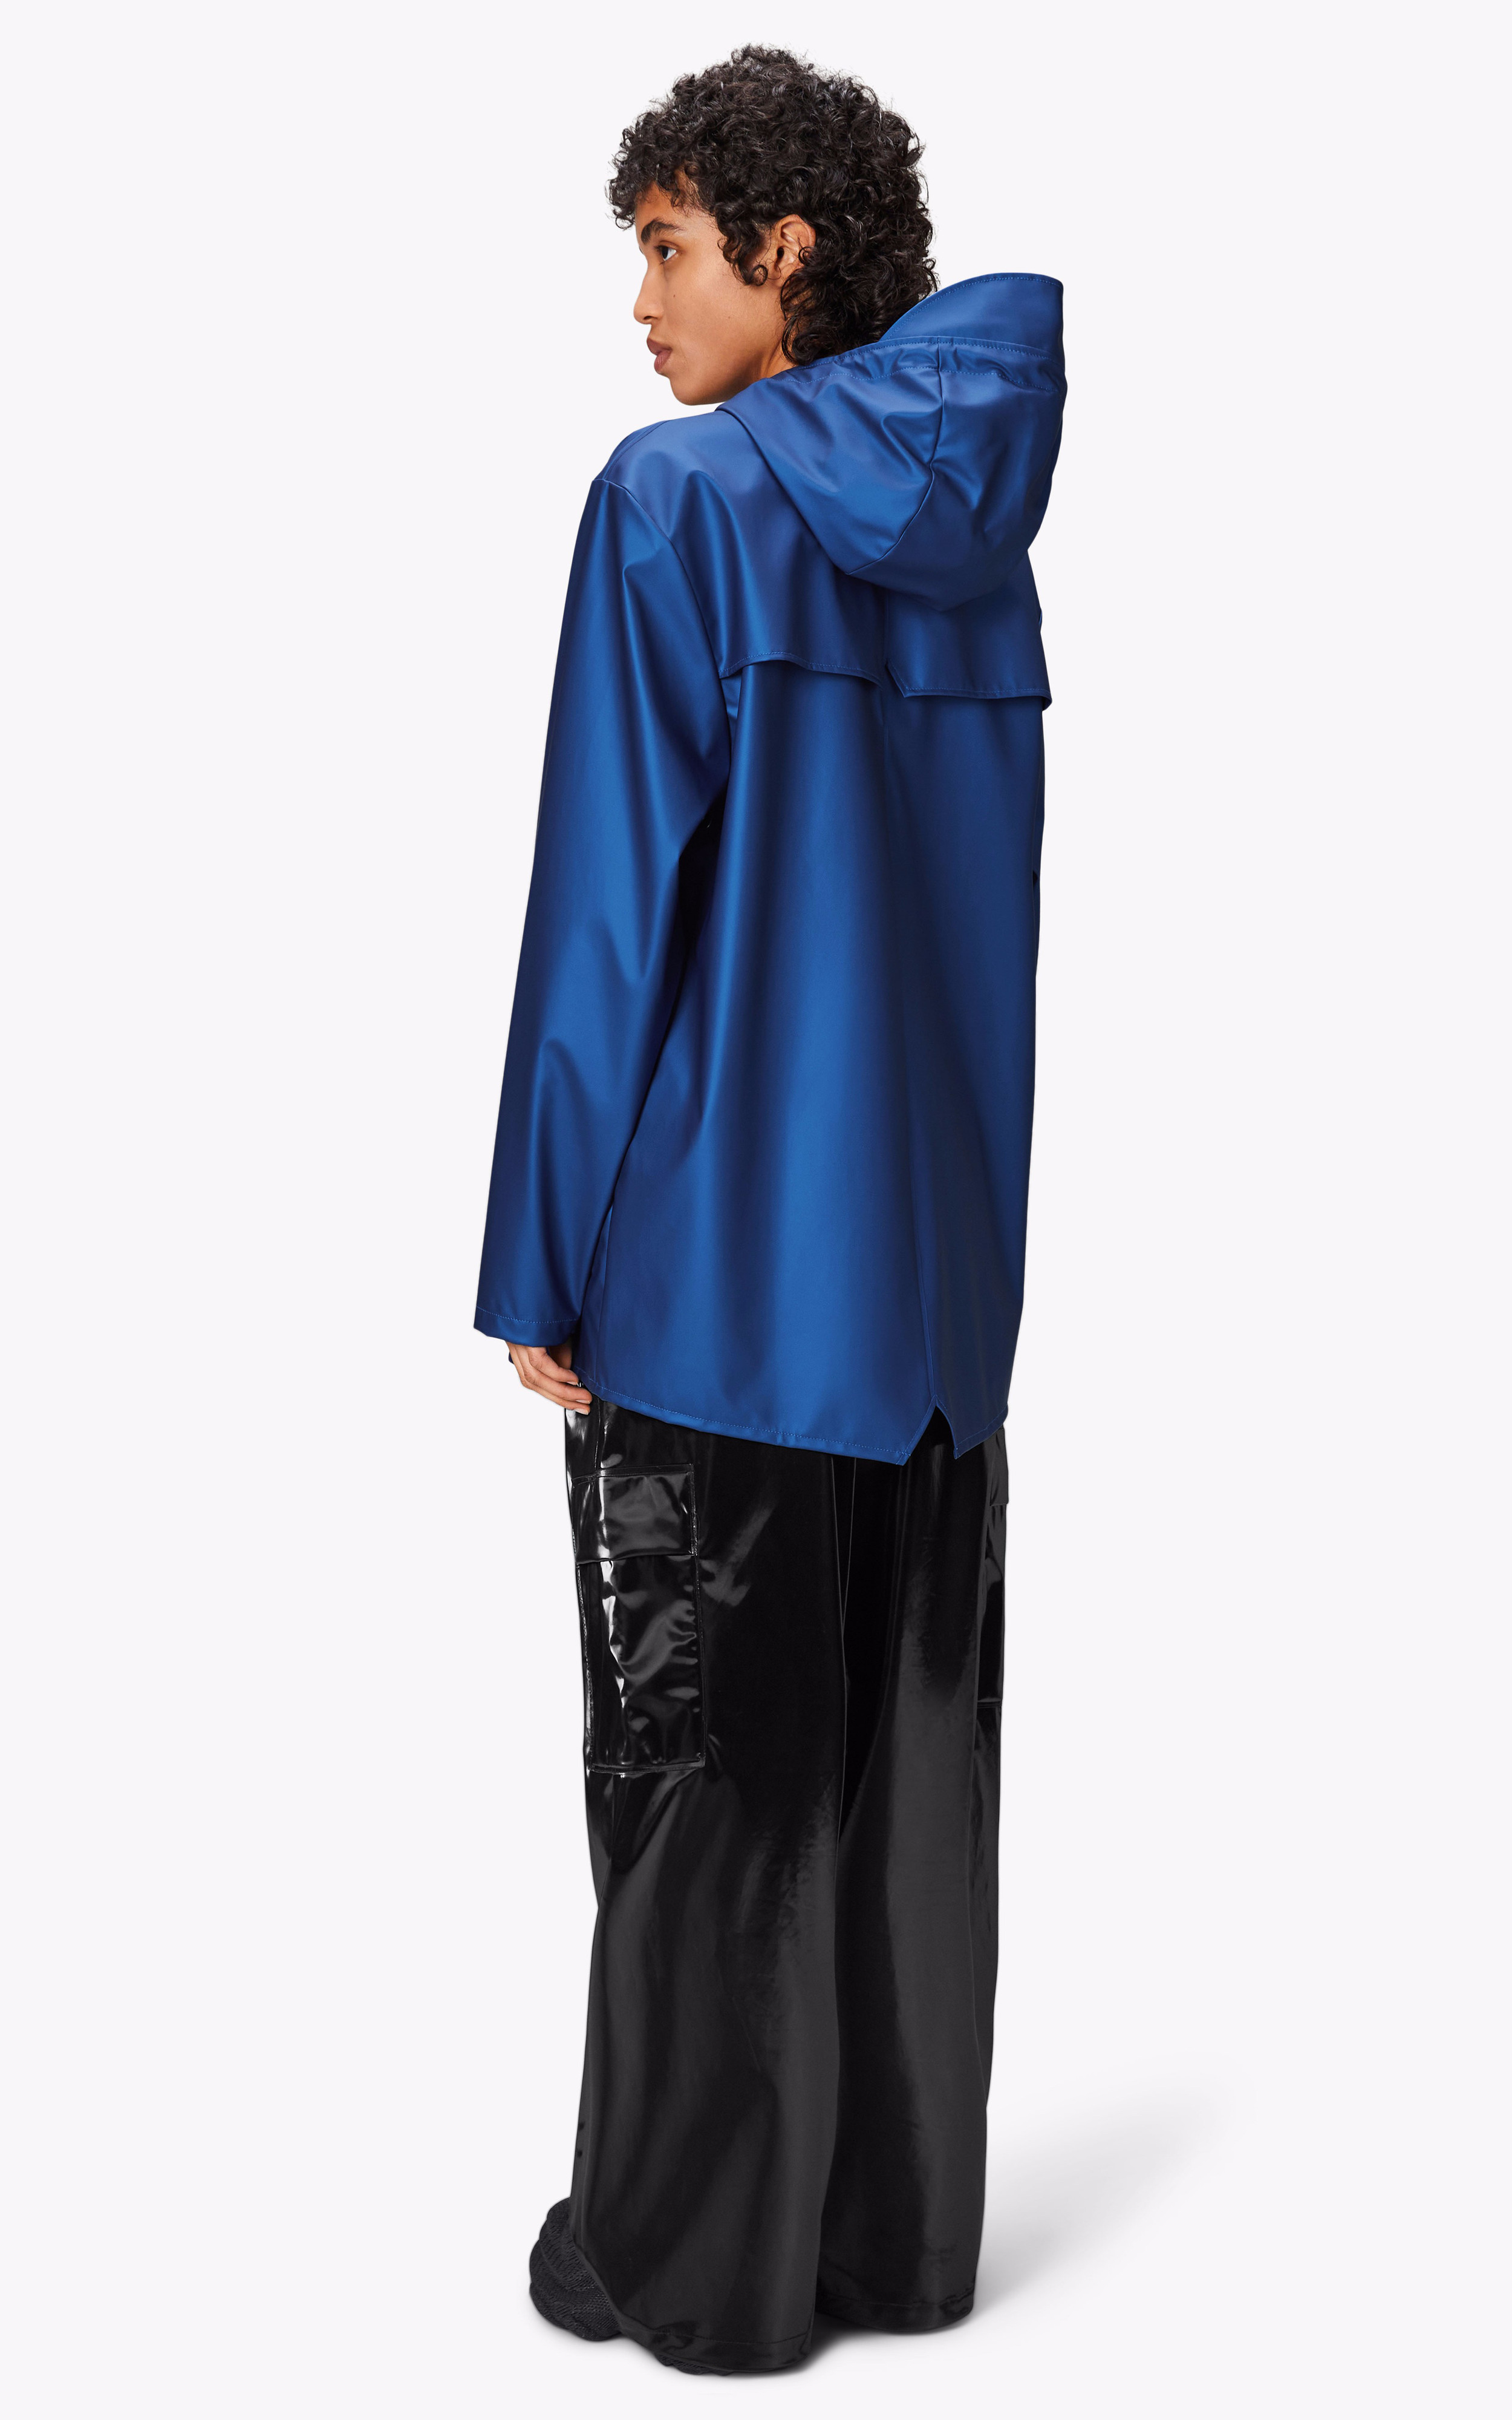 Imperméable Jacket 12010 bleu électrique Rains